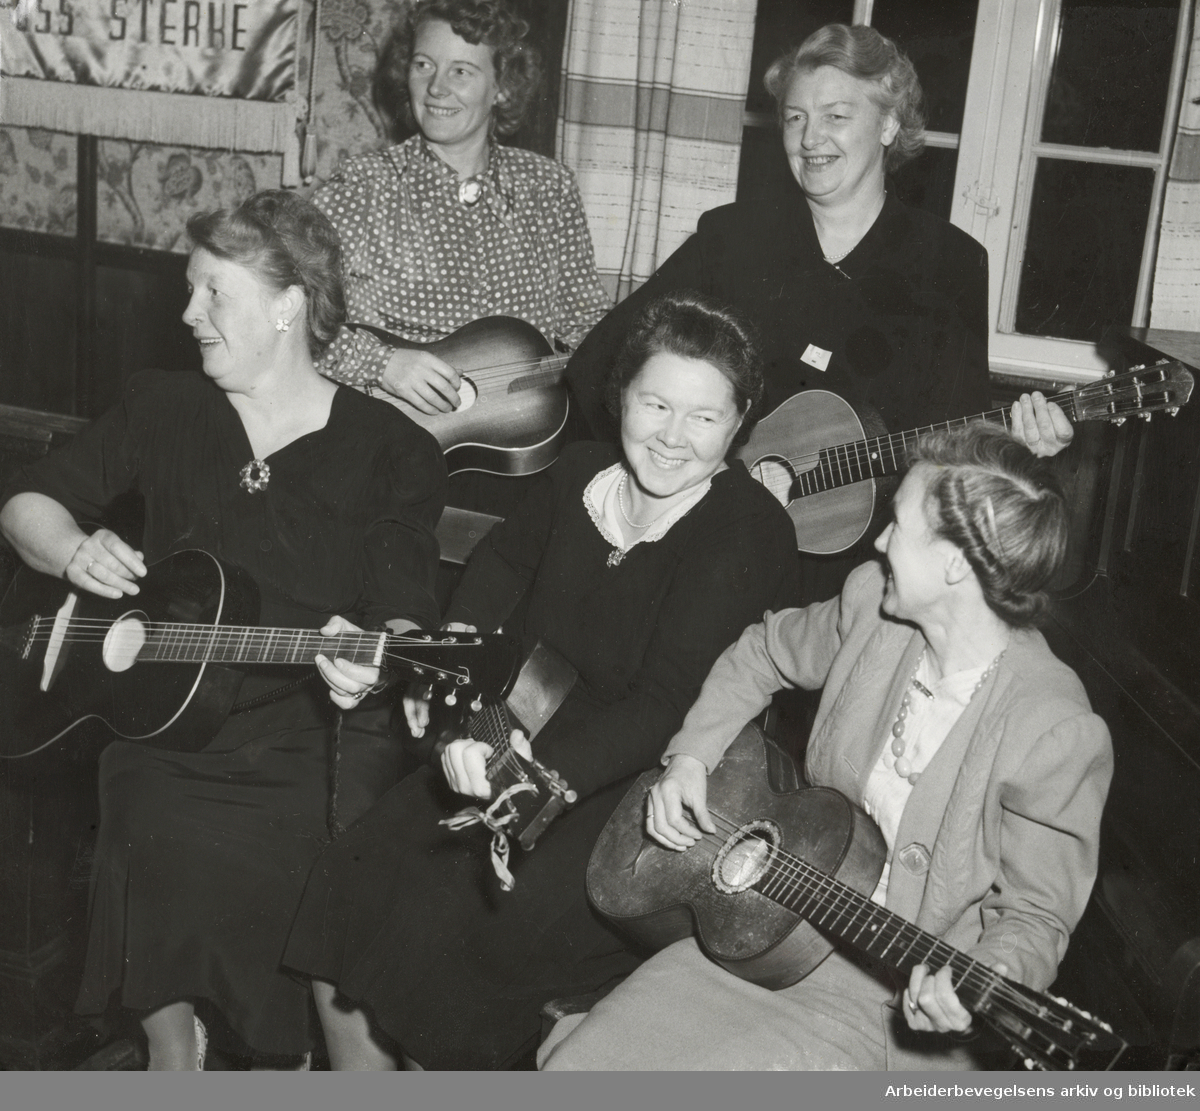 Simensbråten kvinnegruppe av DNA feirer sitt 5-års jubileum med gitarspill. Fra venstre: Margit Gammelsrud, Ågot Johansen, Lydin Jacobsen, Else Pedersen og Magnhild Johansen. November 1950